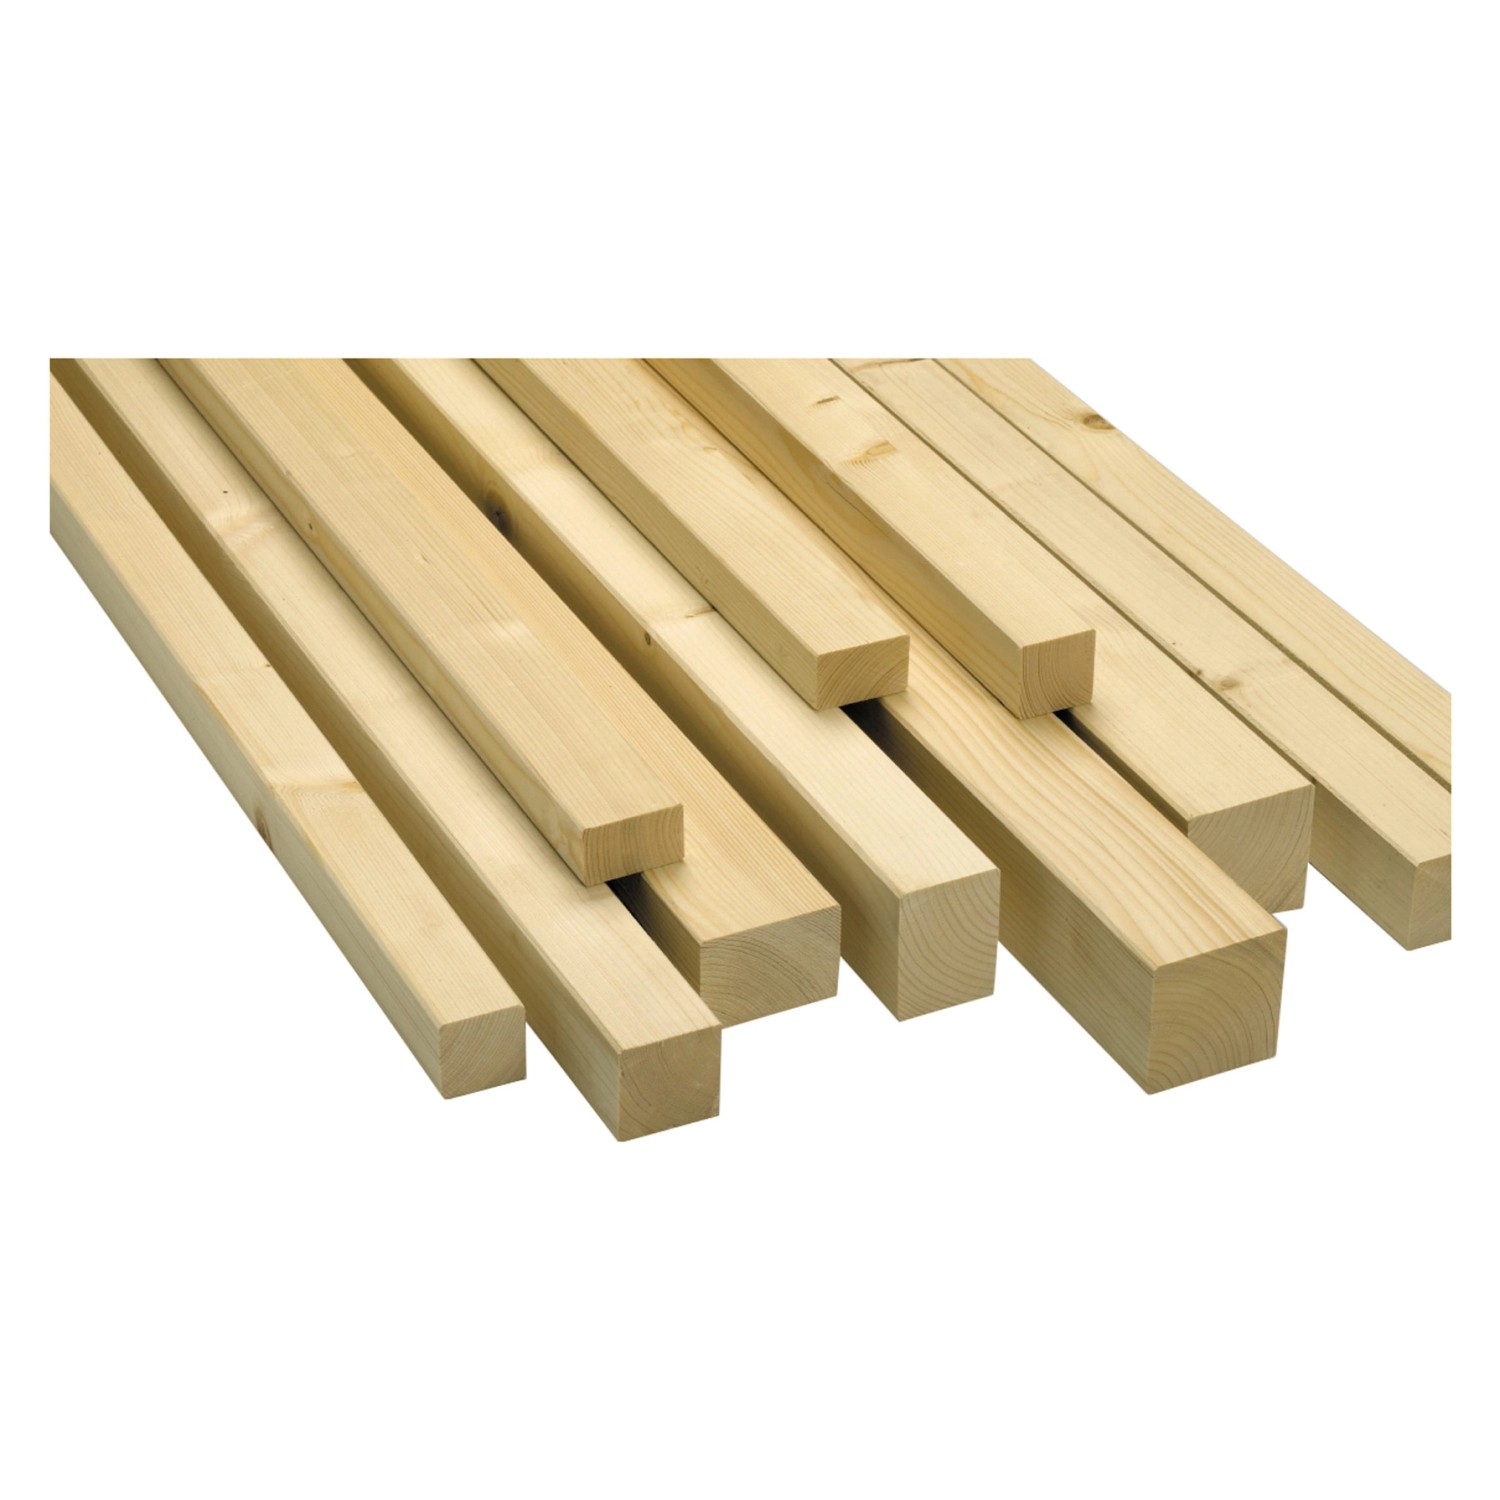 Rahmenholz aus Fichte/Tanne gehobelt 54 mm x 74 mm x 2.000 mm